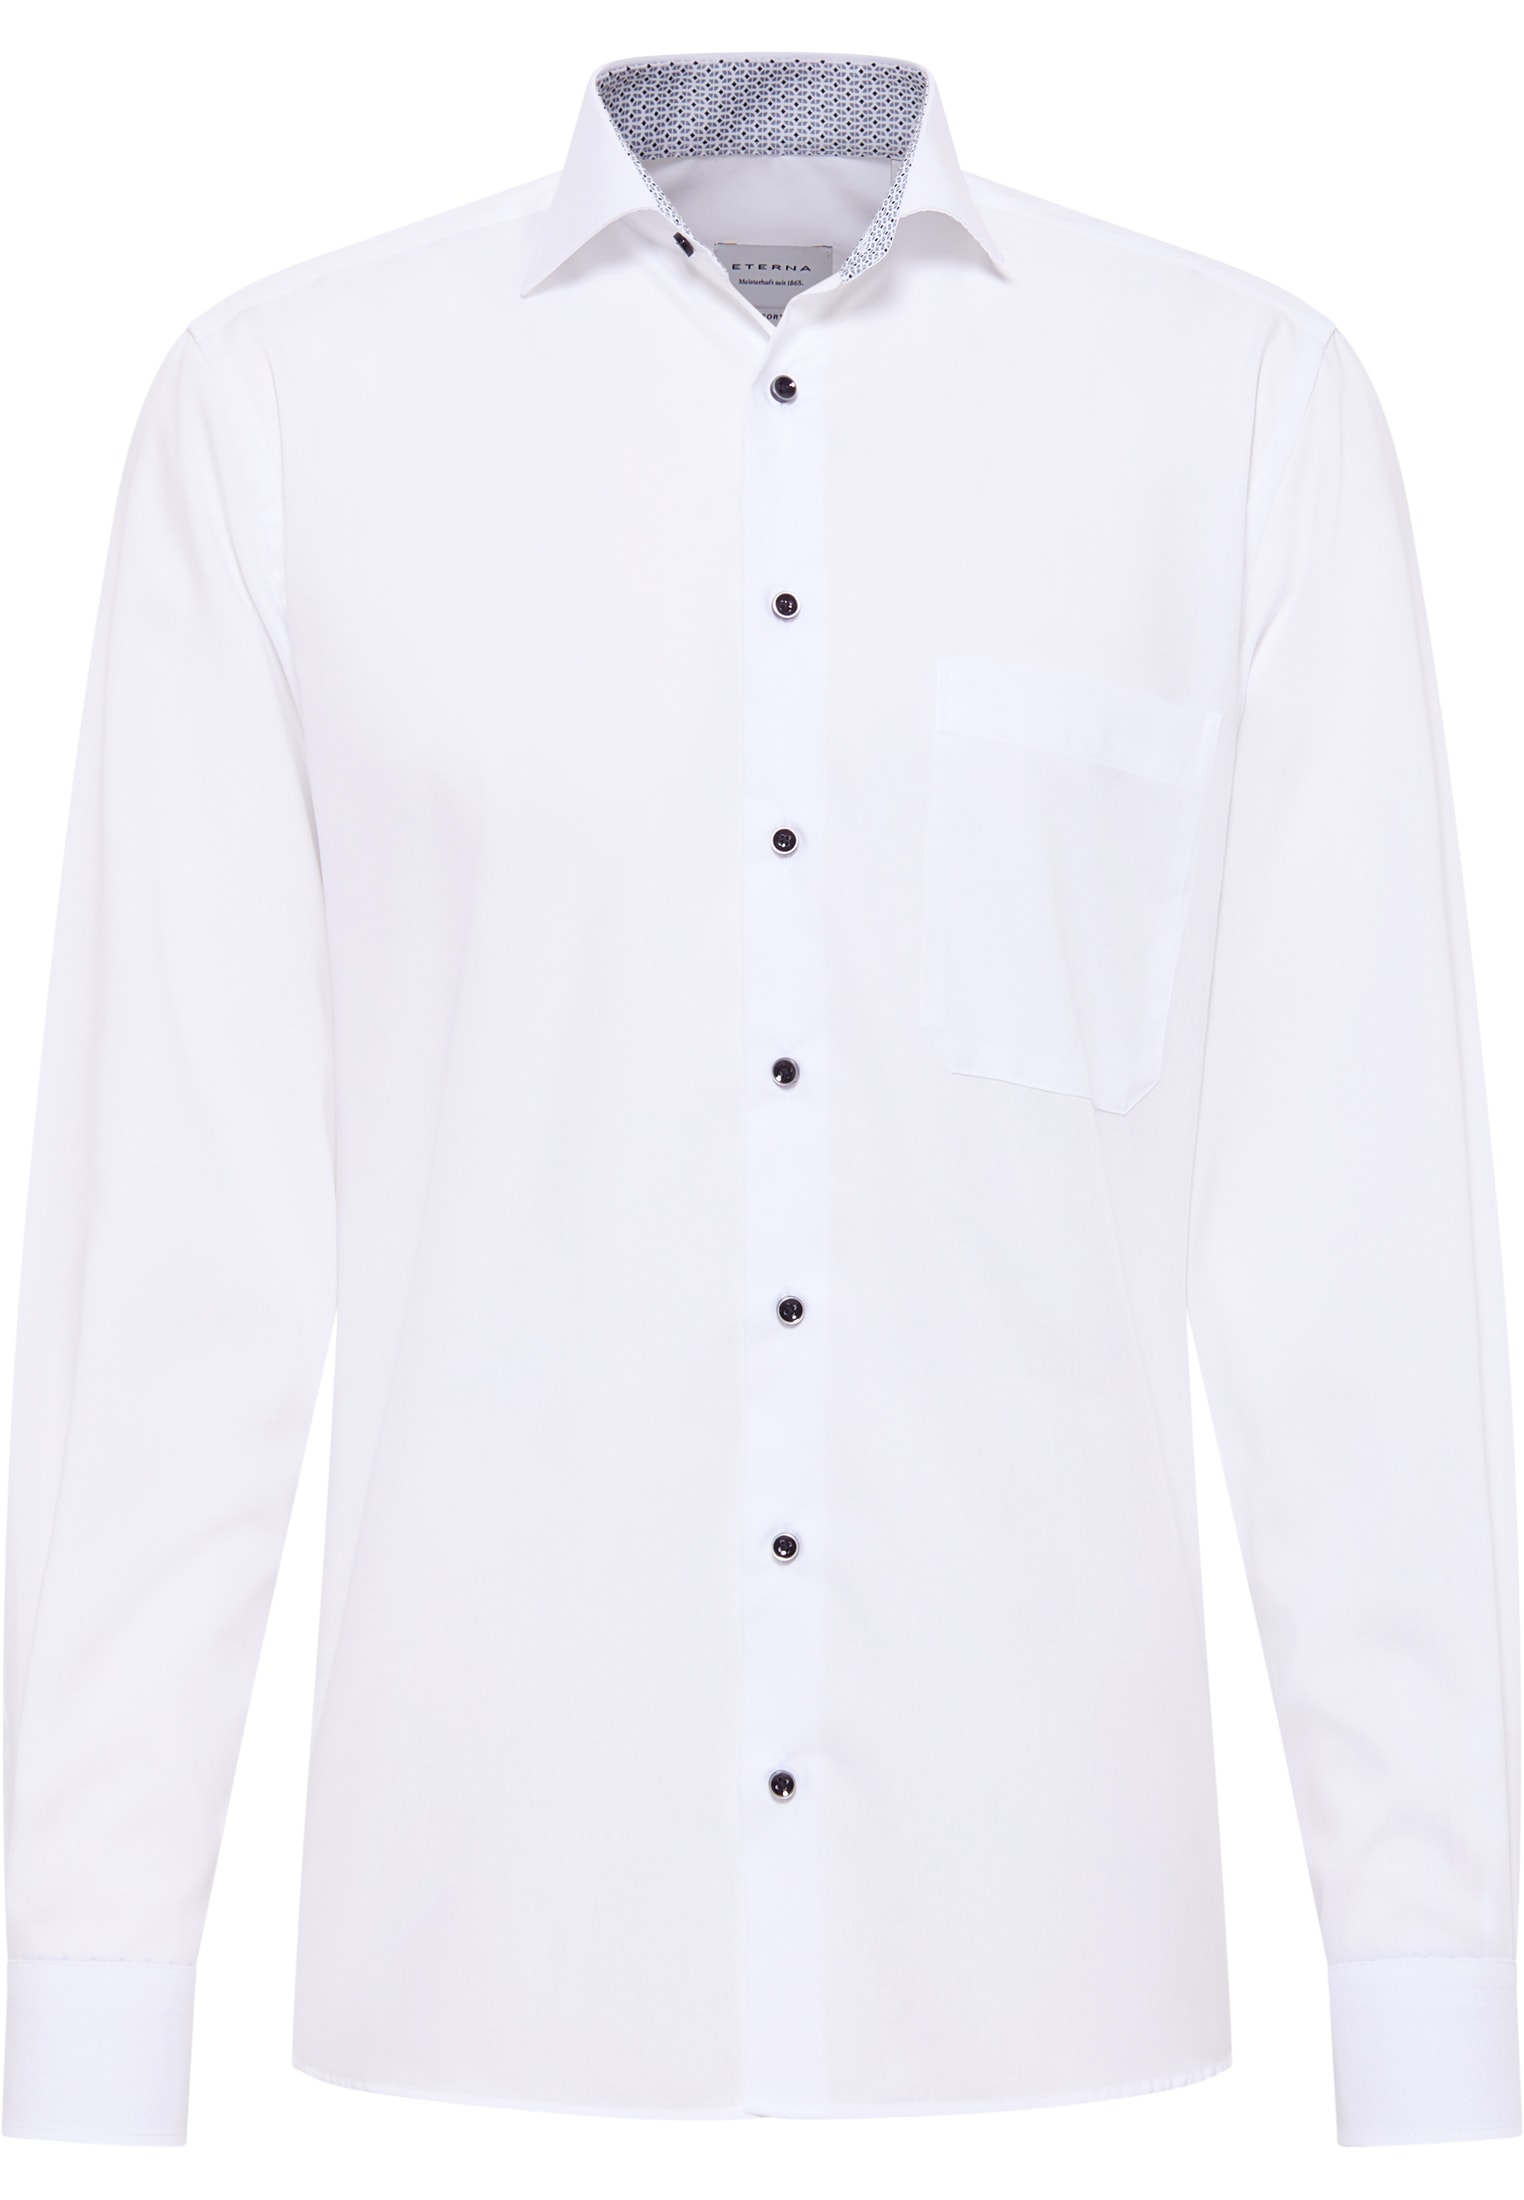 COMFORT FIT Original Shirt | 44 | (59 verkürzter weiß in cm) unifarben 1SH12862-00-01-44-59 | | Arm weiß